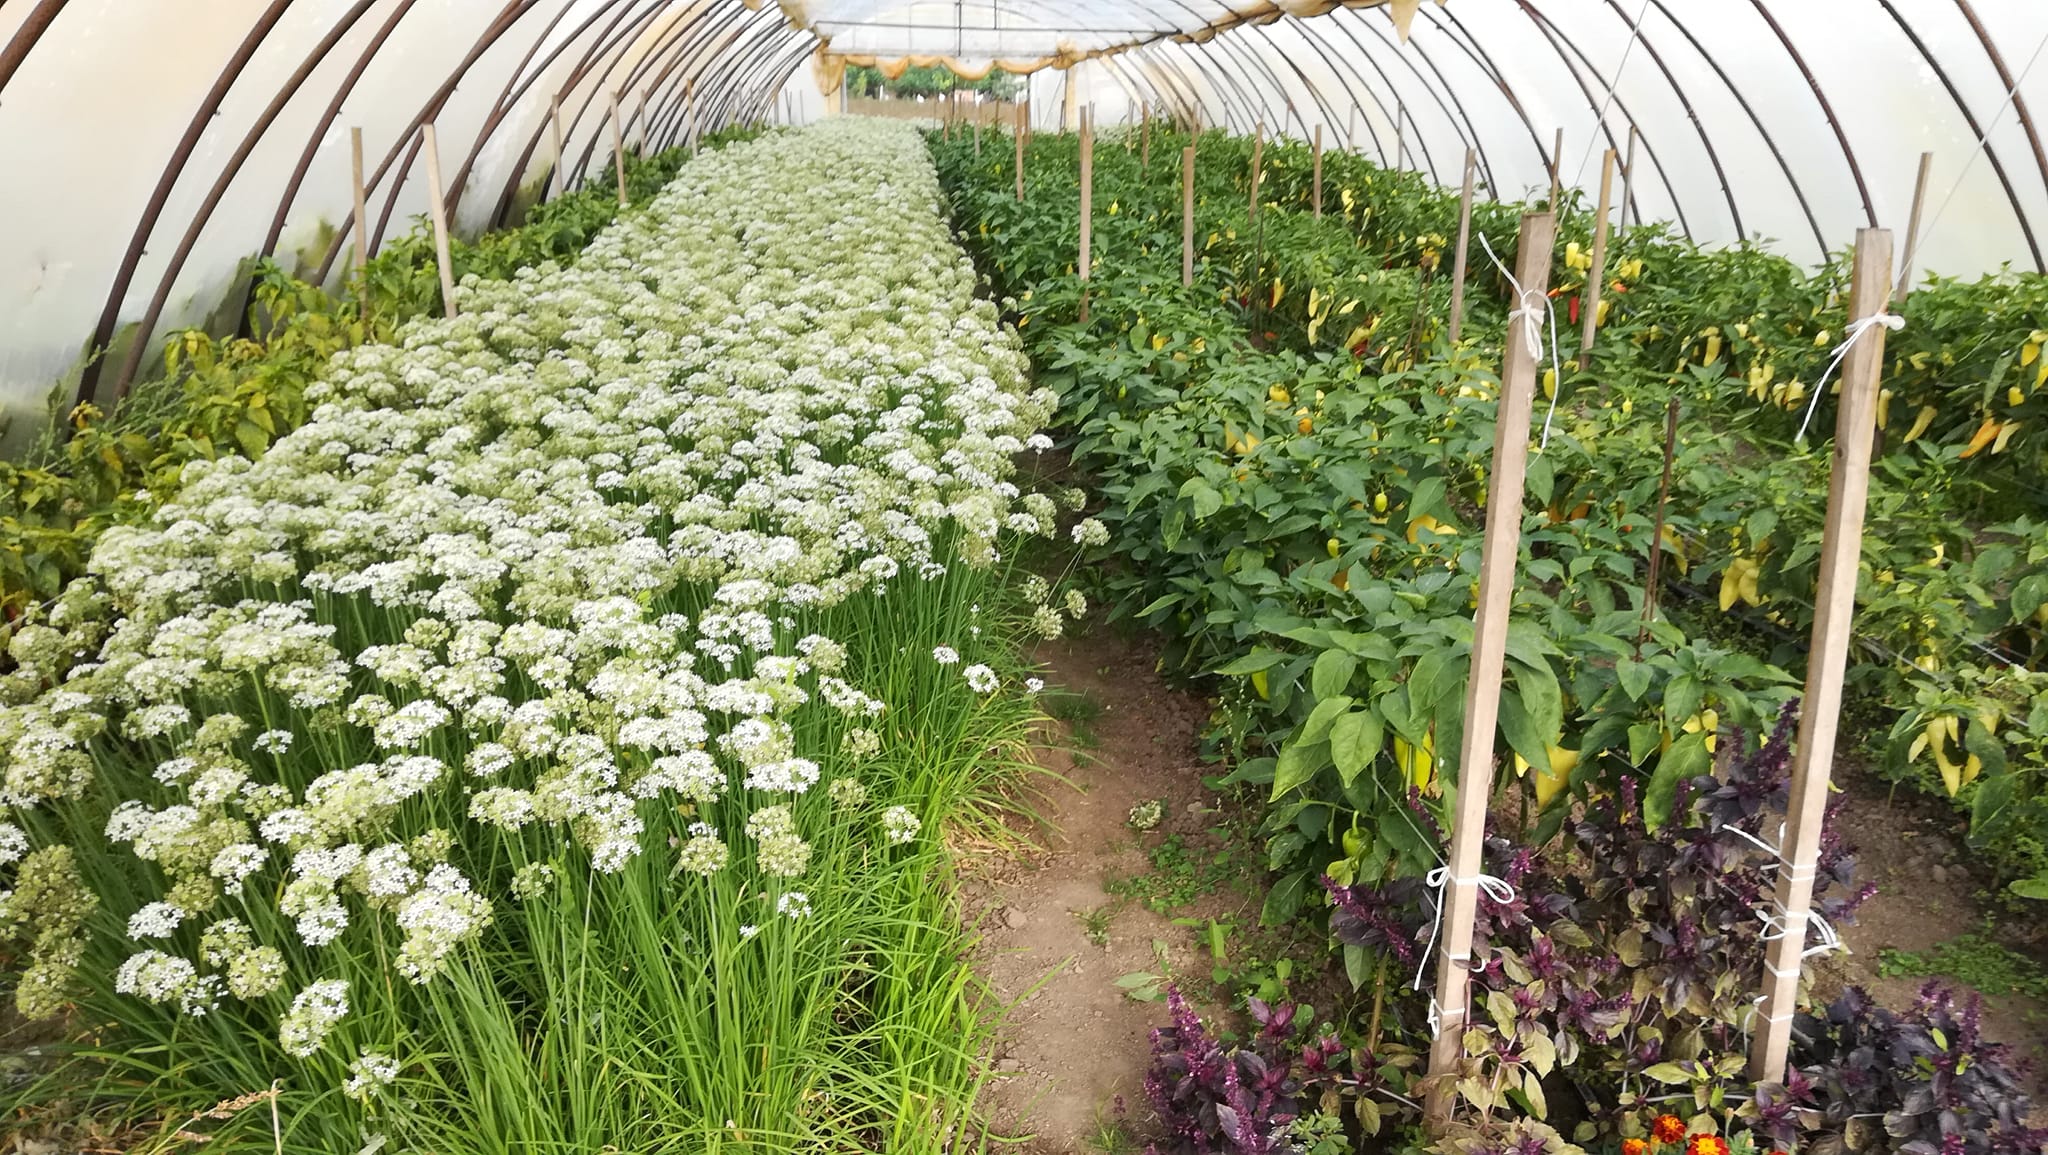 Tipikus zöldségsátor egy biogazdaságban.